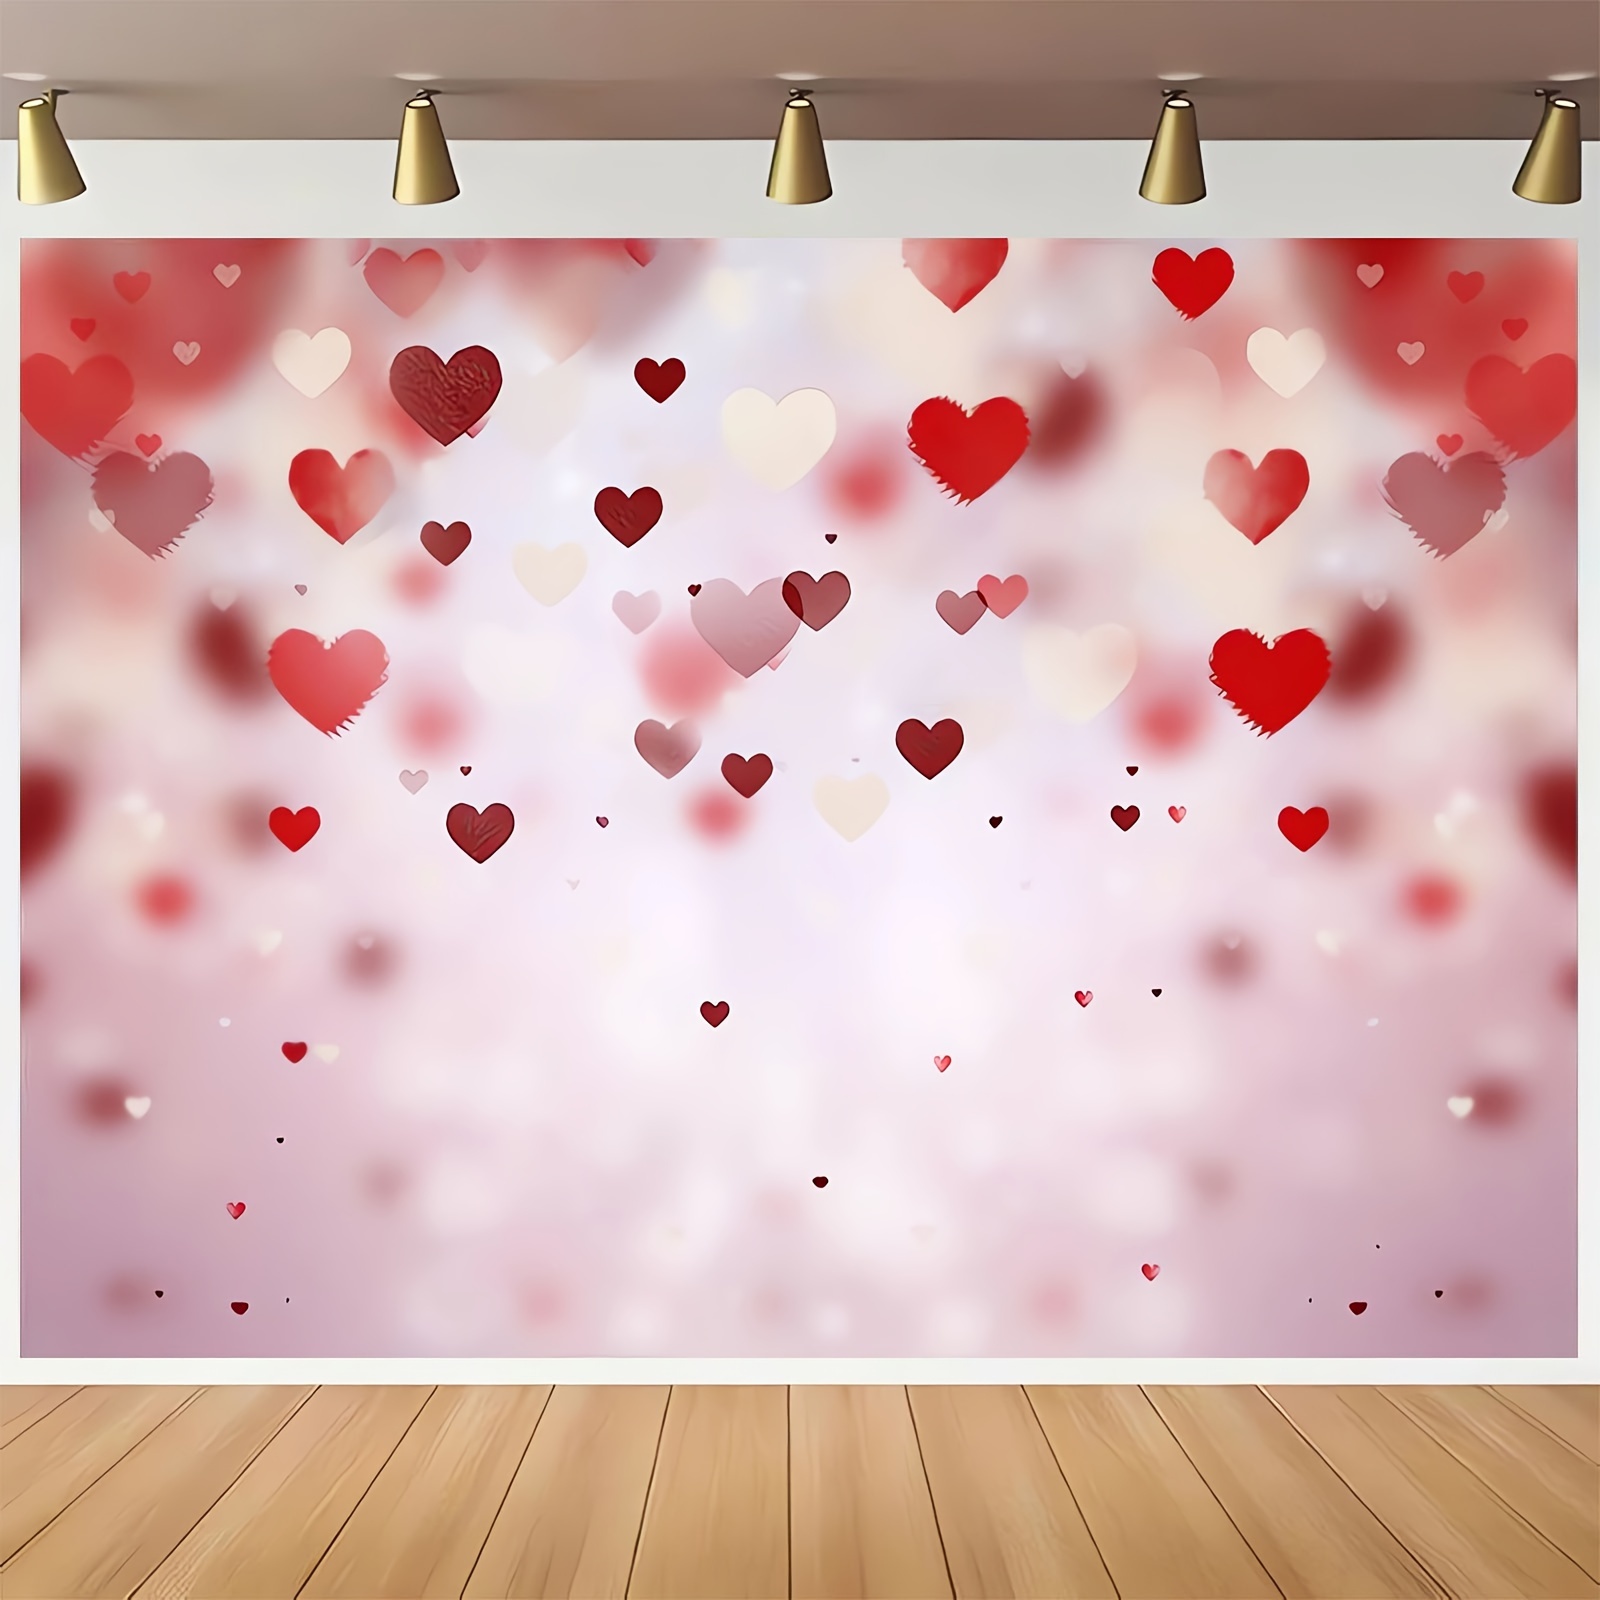 Fondo De San Valentín Con Decoración De Corazón Rojo Para Fotografía, Para Usar Como Fondo De Fotos O Videos, En Tamaños De 51 Pulgadas X 59 Pulgadas O 70.8 Pulgadas X 90.5 Pulgadas.